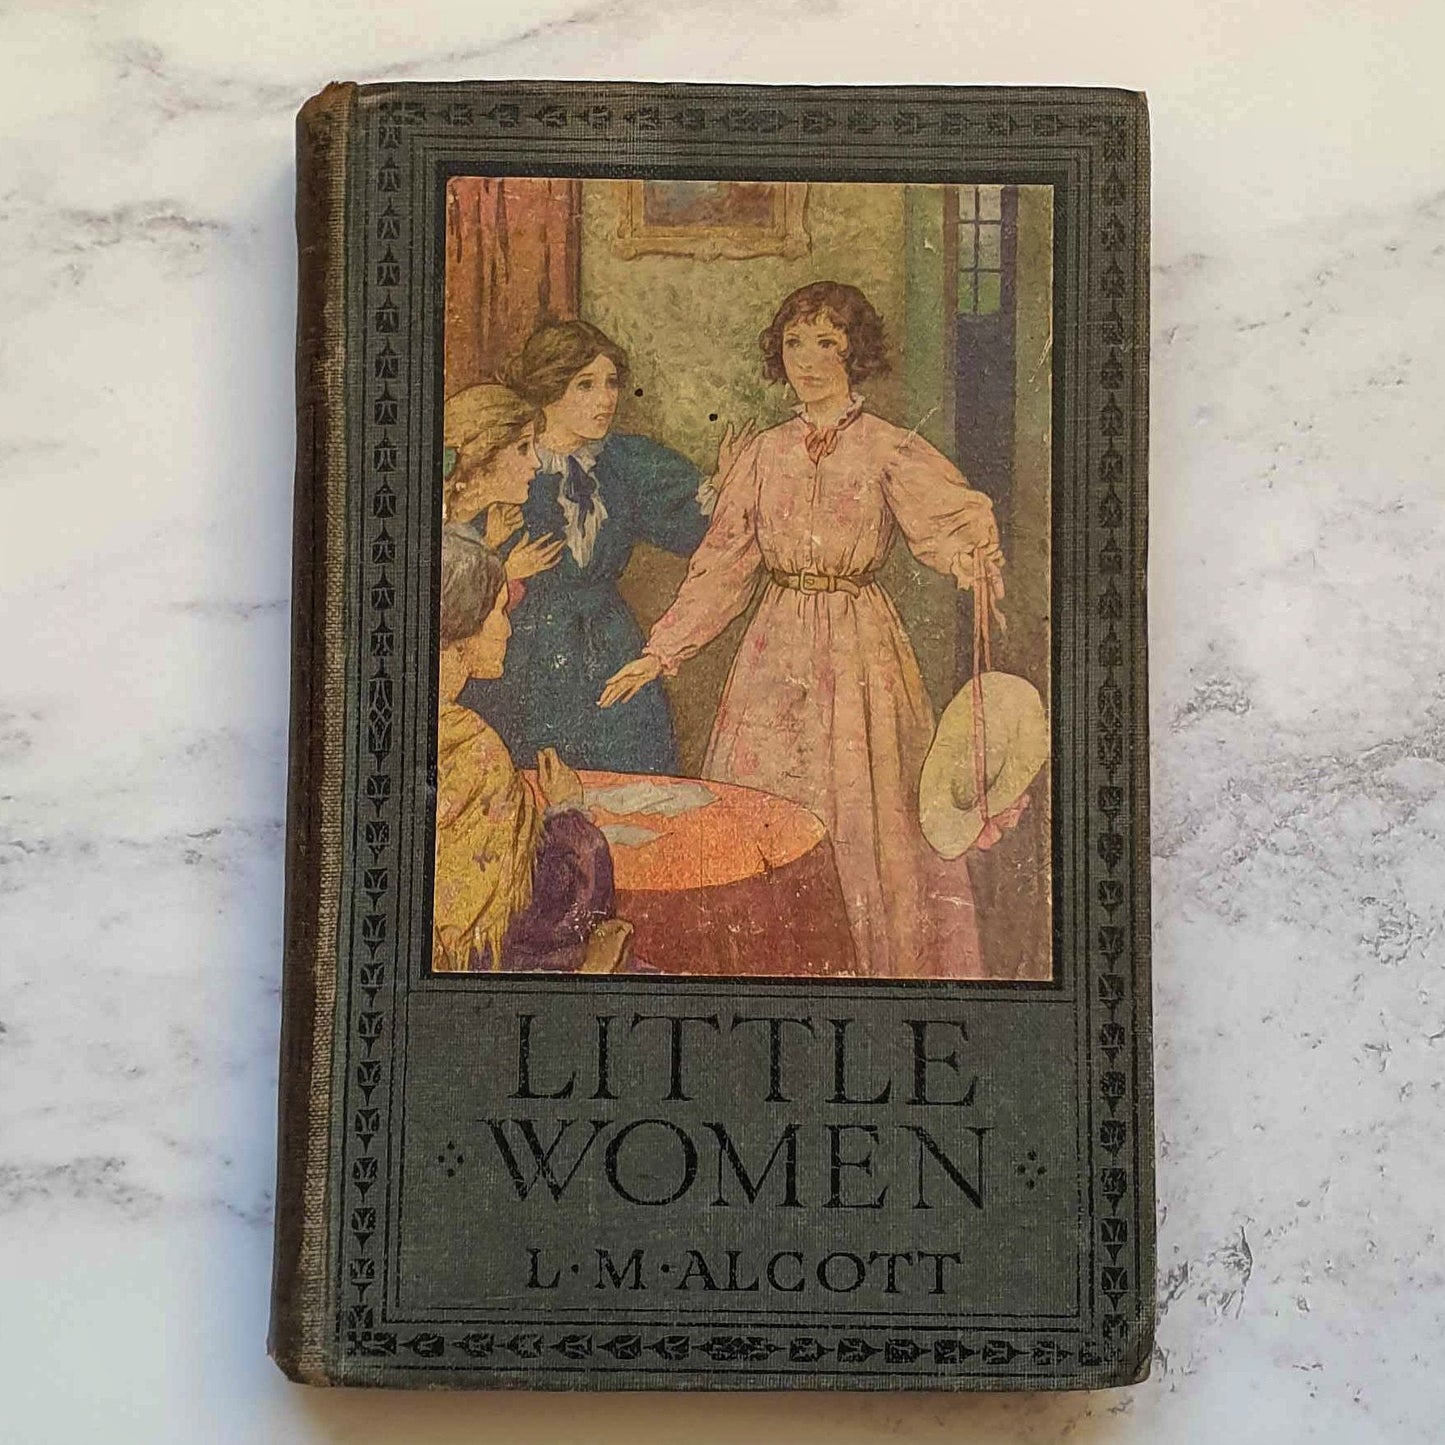 Antique Edition Little Women 1921